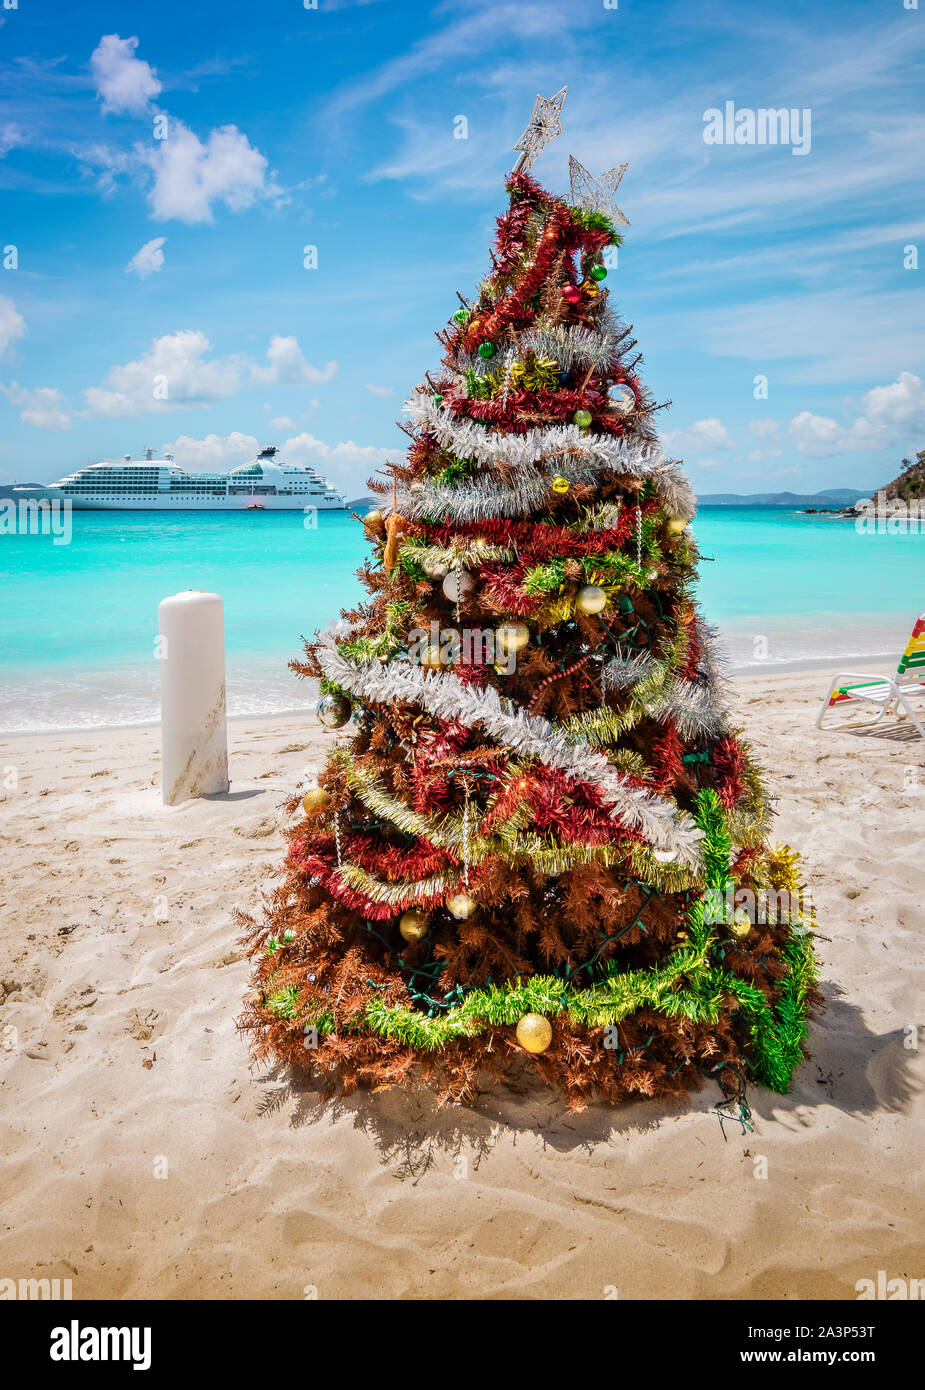 Albero di Natale decorato sulla sabbia bianca della spiaggia caraibica, Jost Van Dyke, Isole Vergini Britanniche. La nave di crociera in background. Foto Stock